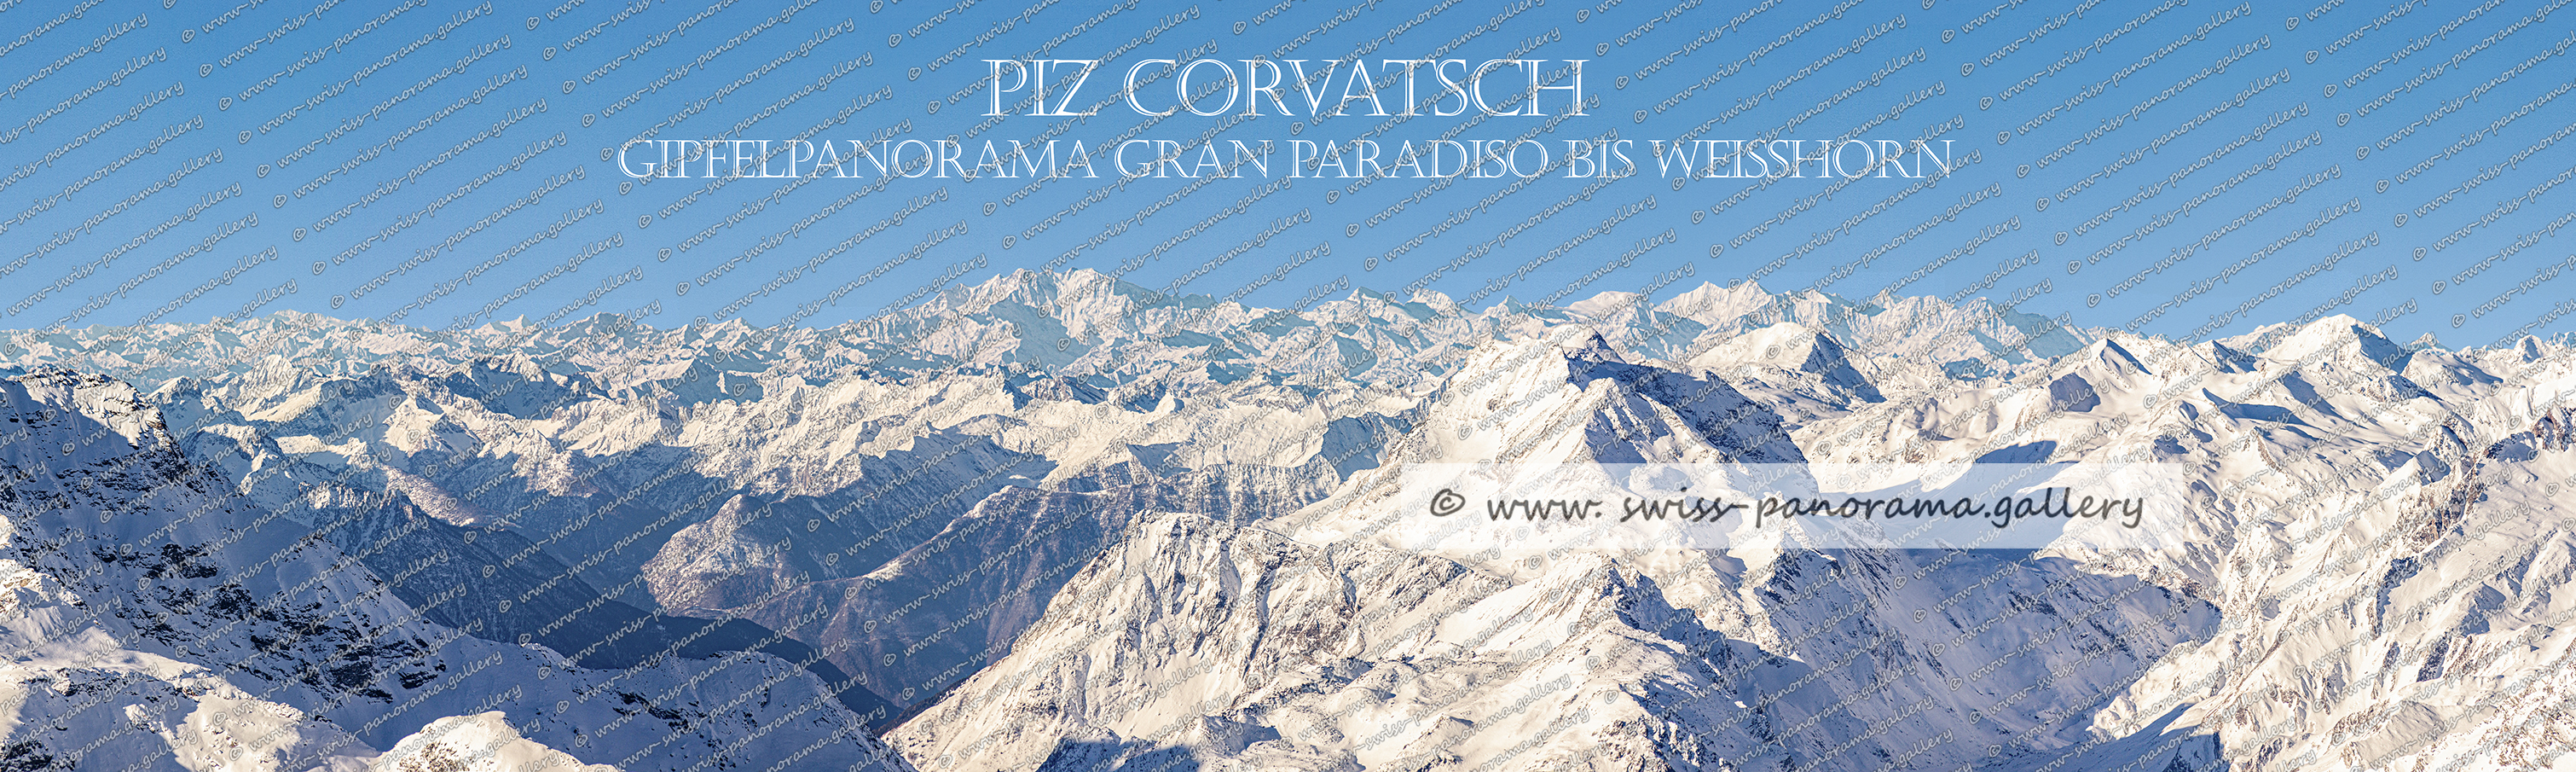 Swistzerland panorama Diavolezza Diavolezza Panorama, Schweizer Alpenpanorama, swiss-panorama.gallery, Gipfelpanorama Piz Corvatsch Fernblick von Gran Paradiso, Monte Rosa und den Walliser Viertausendern